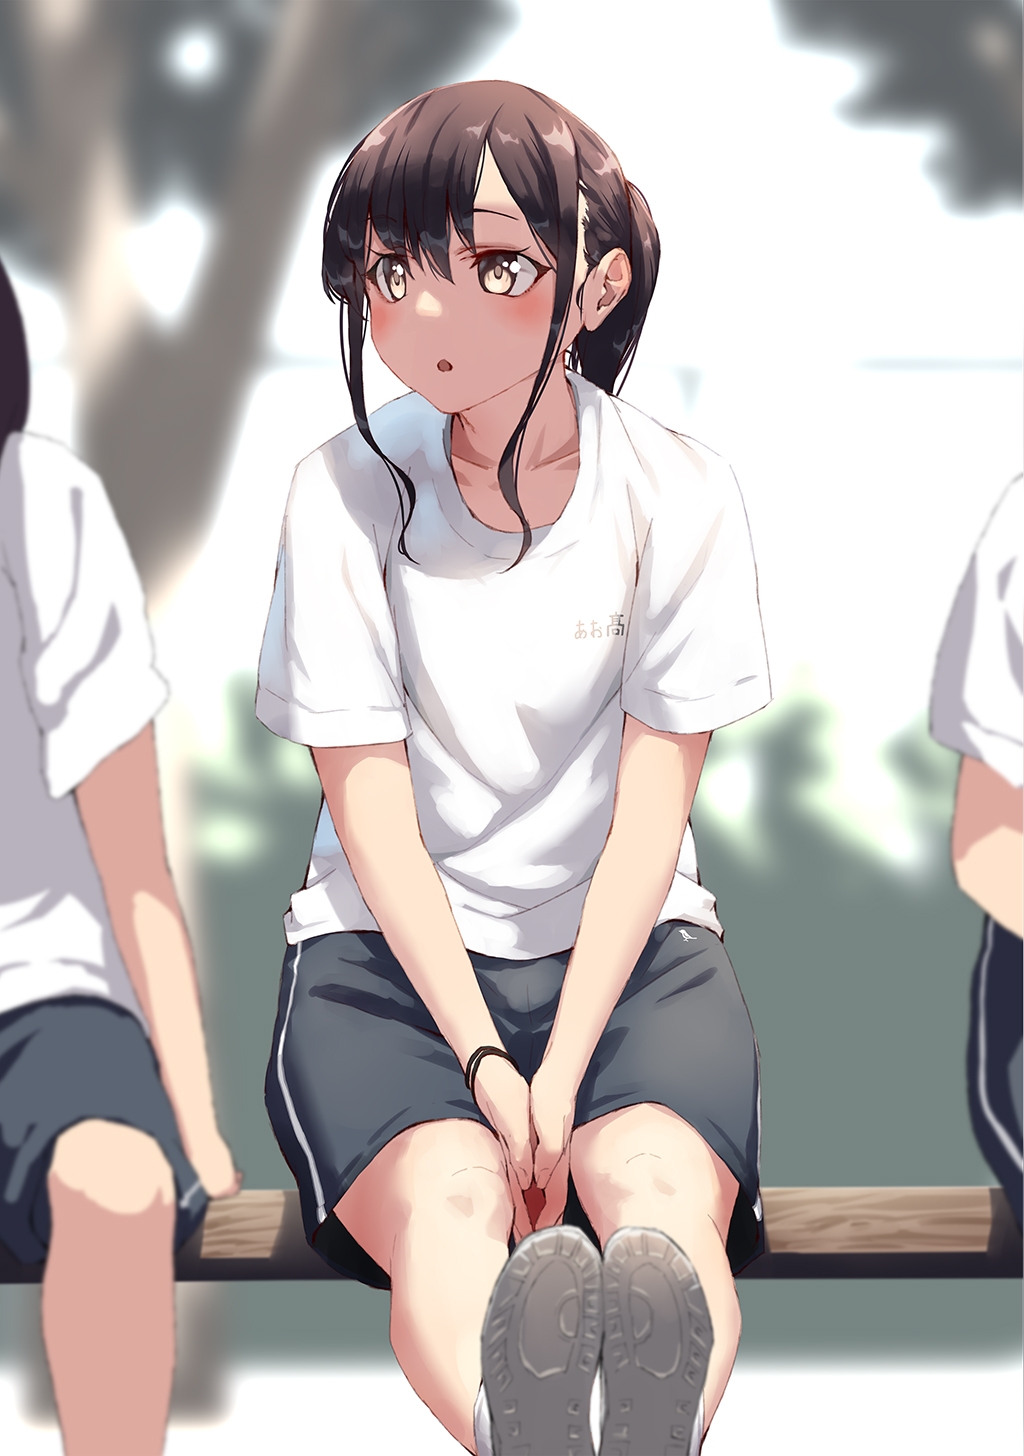 [jonsun] Aoitori High School Illustrations 4 18